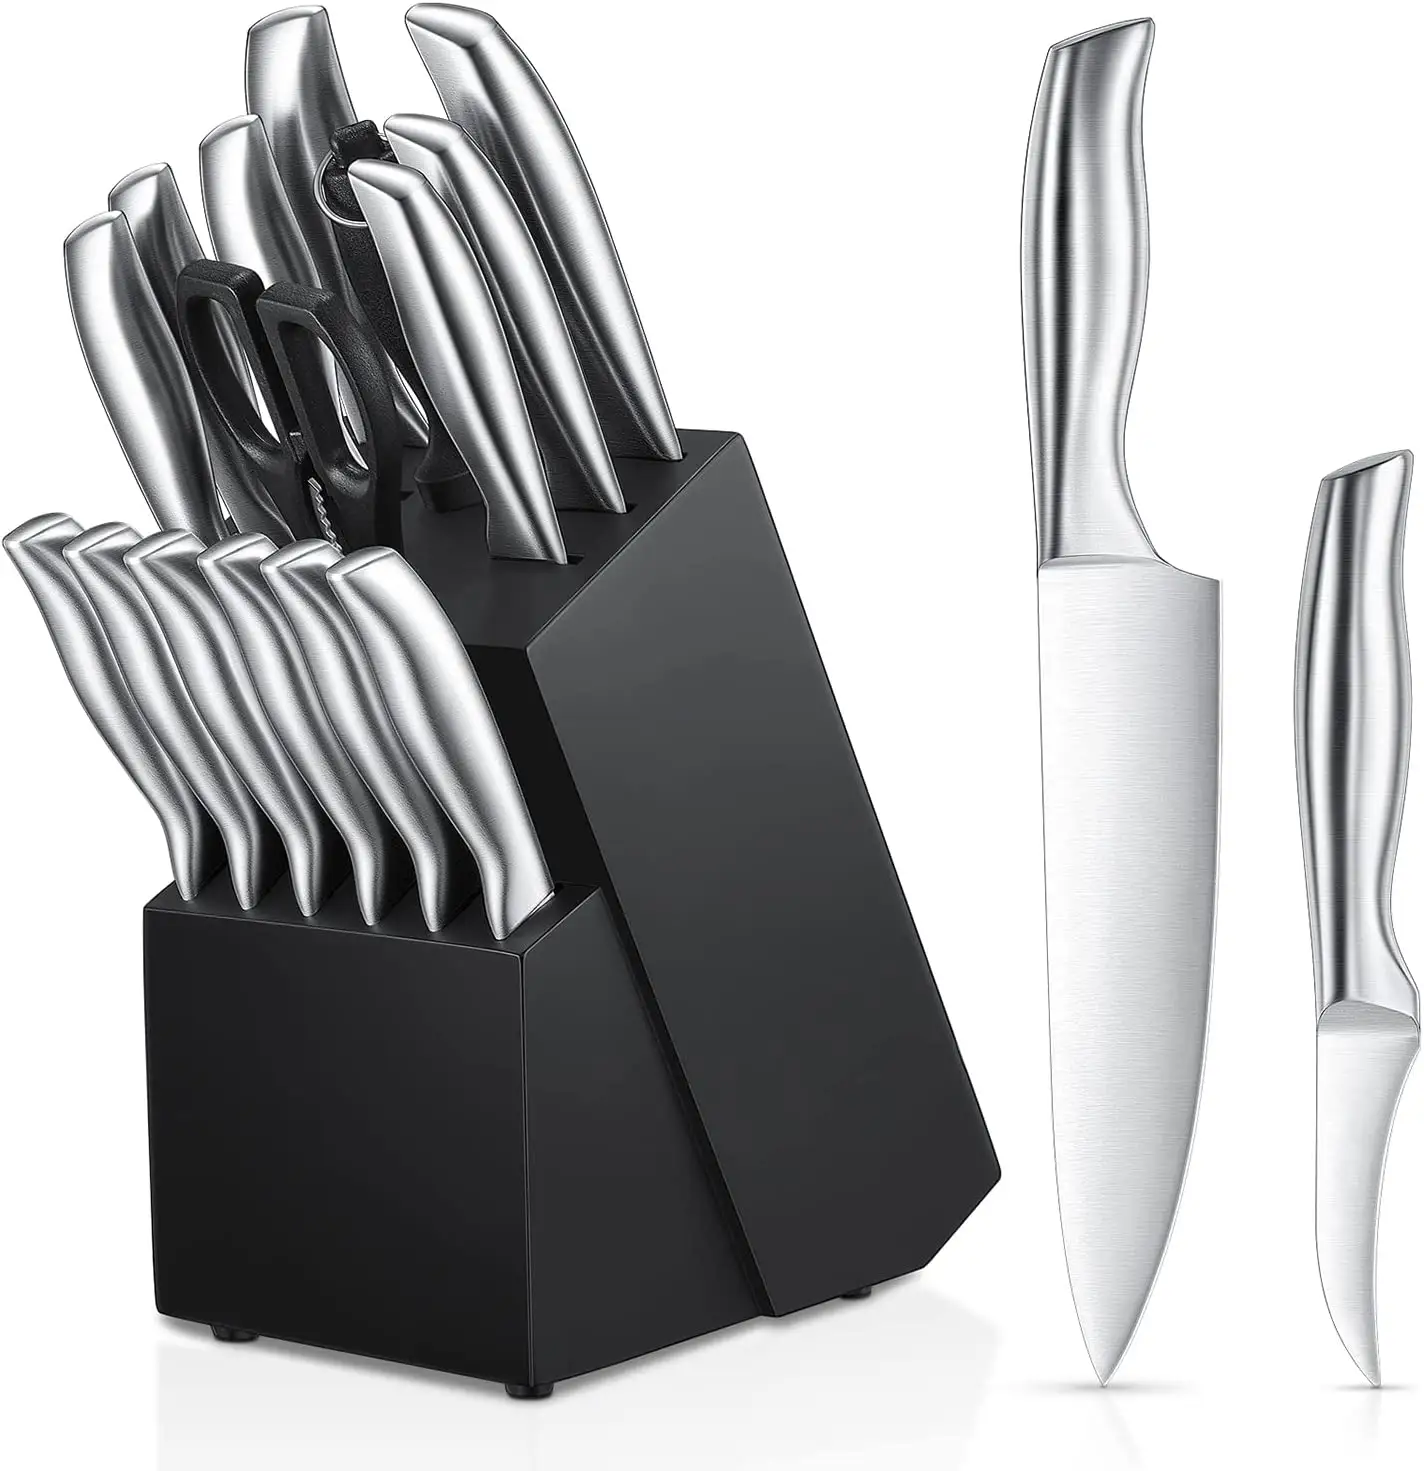 Edelstahl Küchenmesser Block Set Edelstahl Messer block, Edelstahl, Schwarz und Silber Farbe, 16 Stück